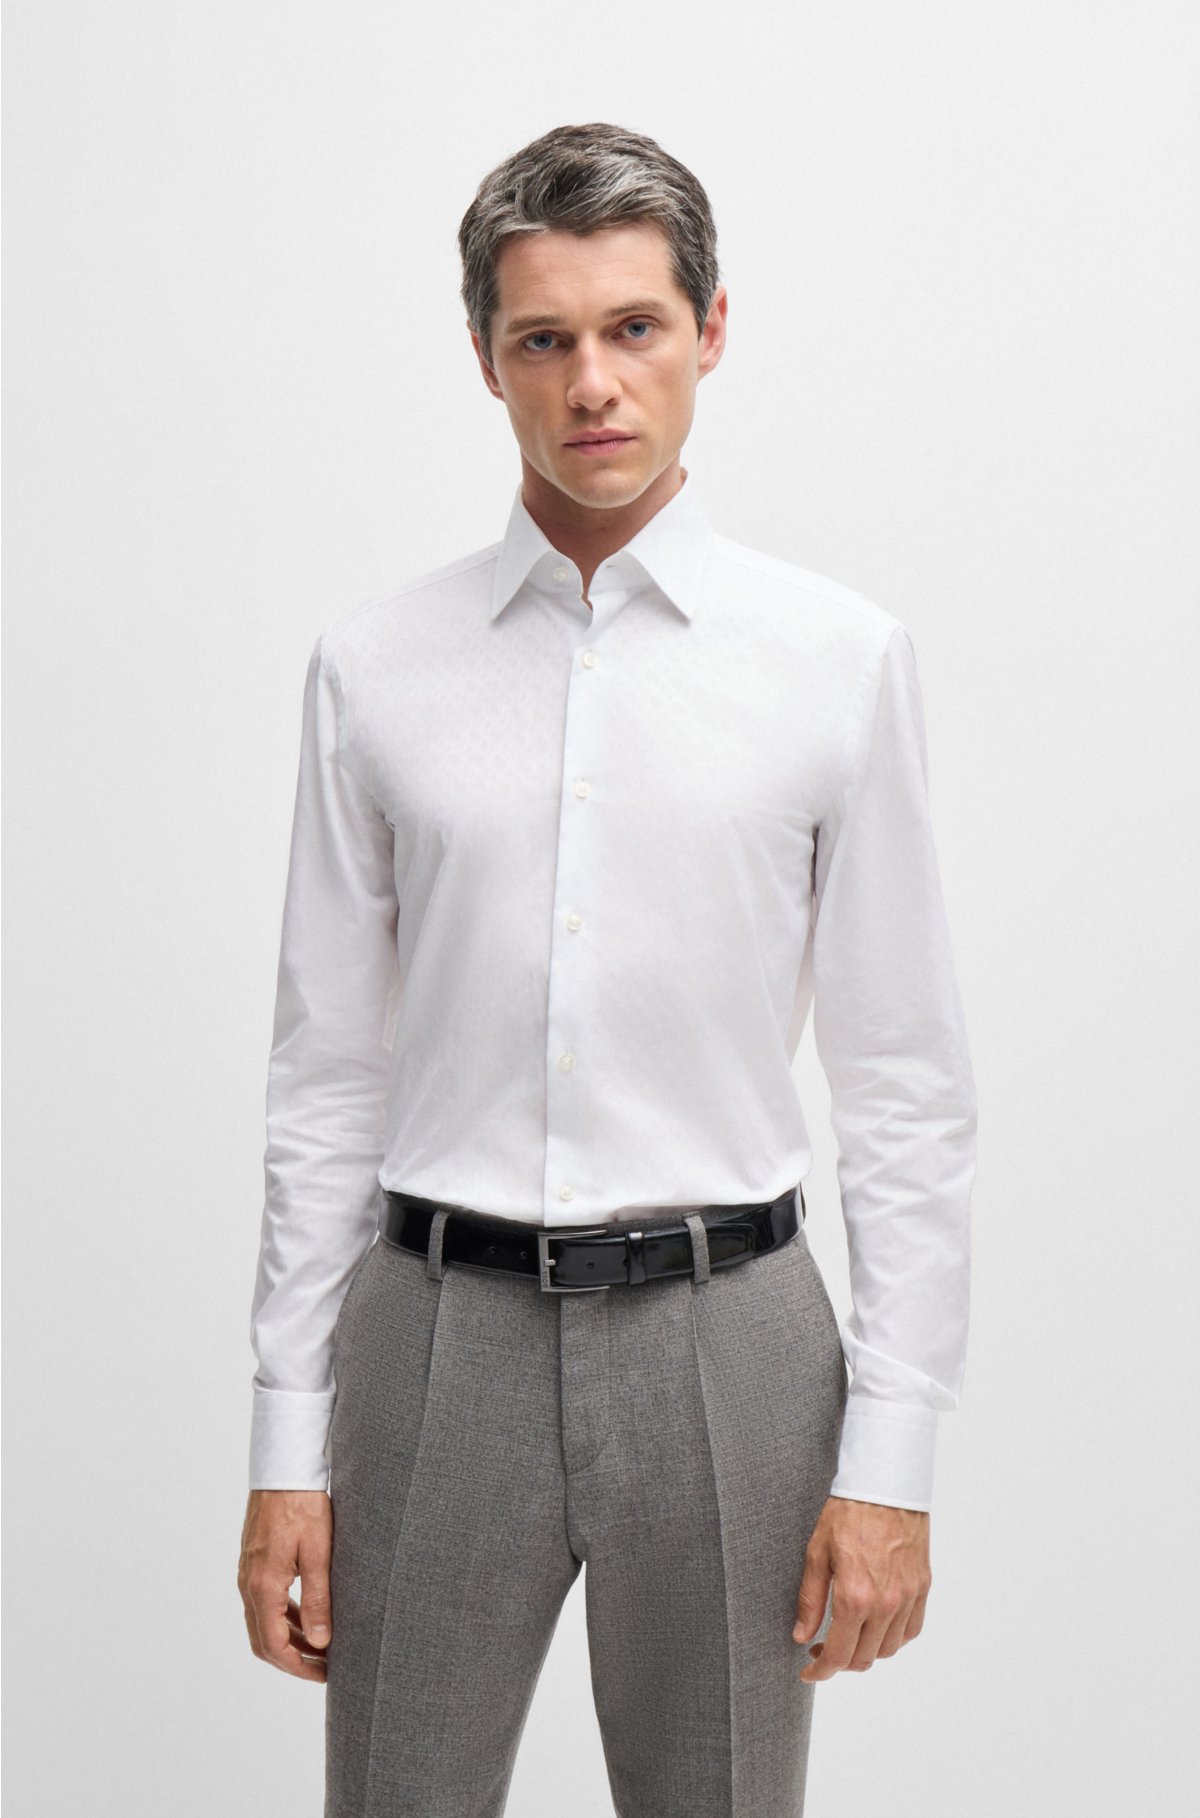 Best White Shirts for Men by HUGO BOSS